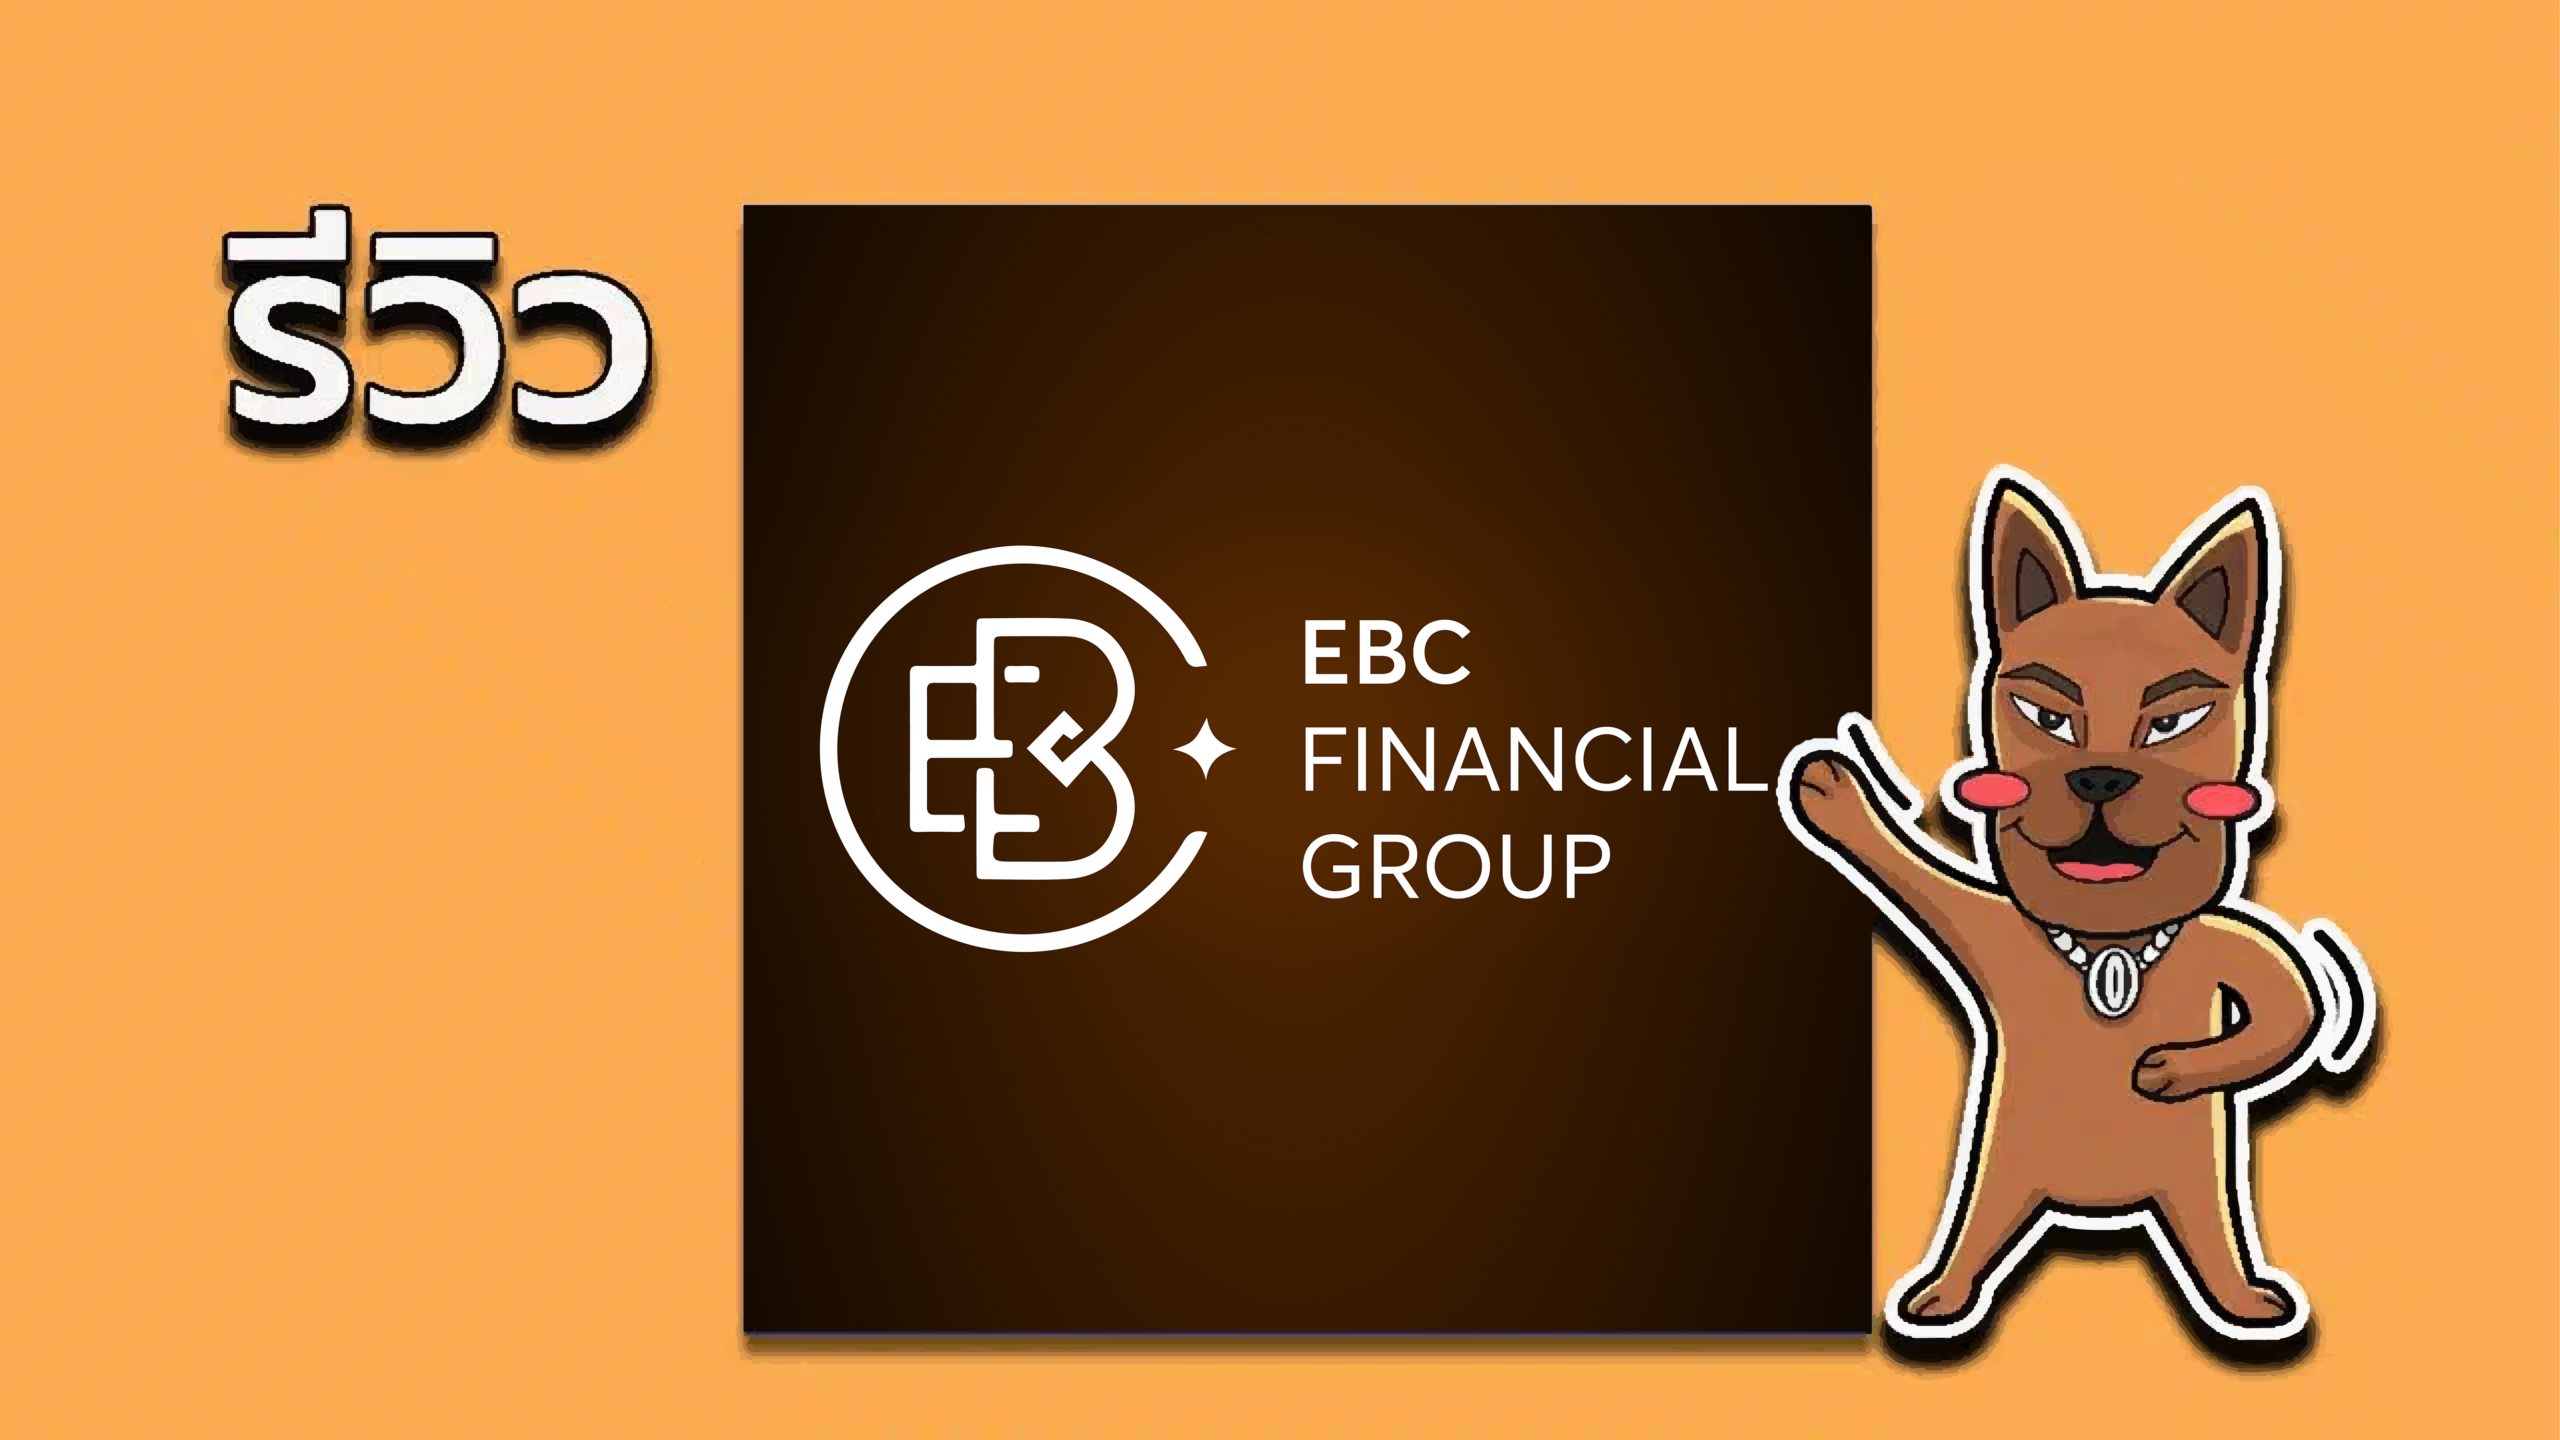 รีวิวโบรกเกอร์ EBC Financial Group ดีไหม?